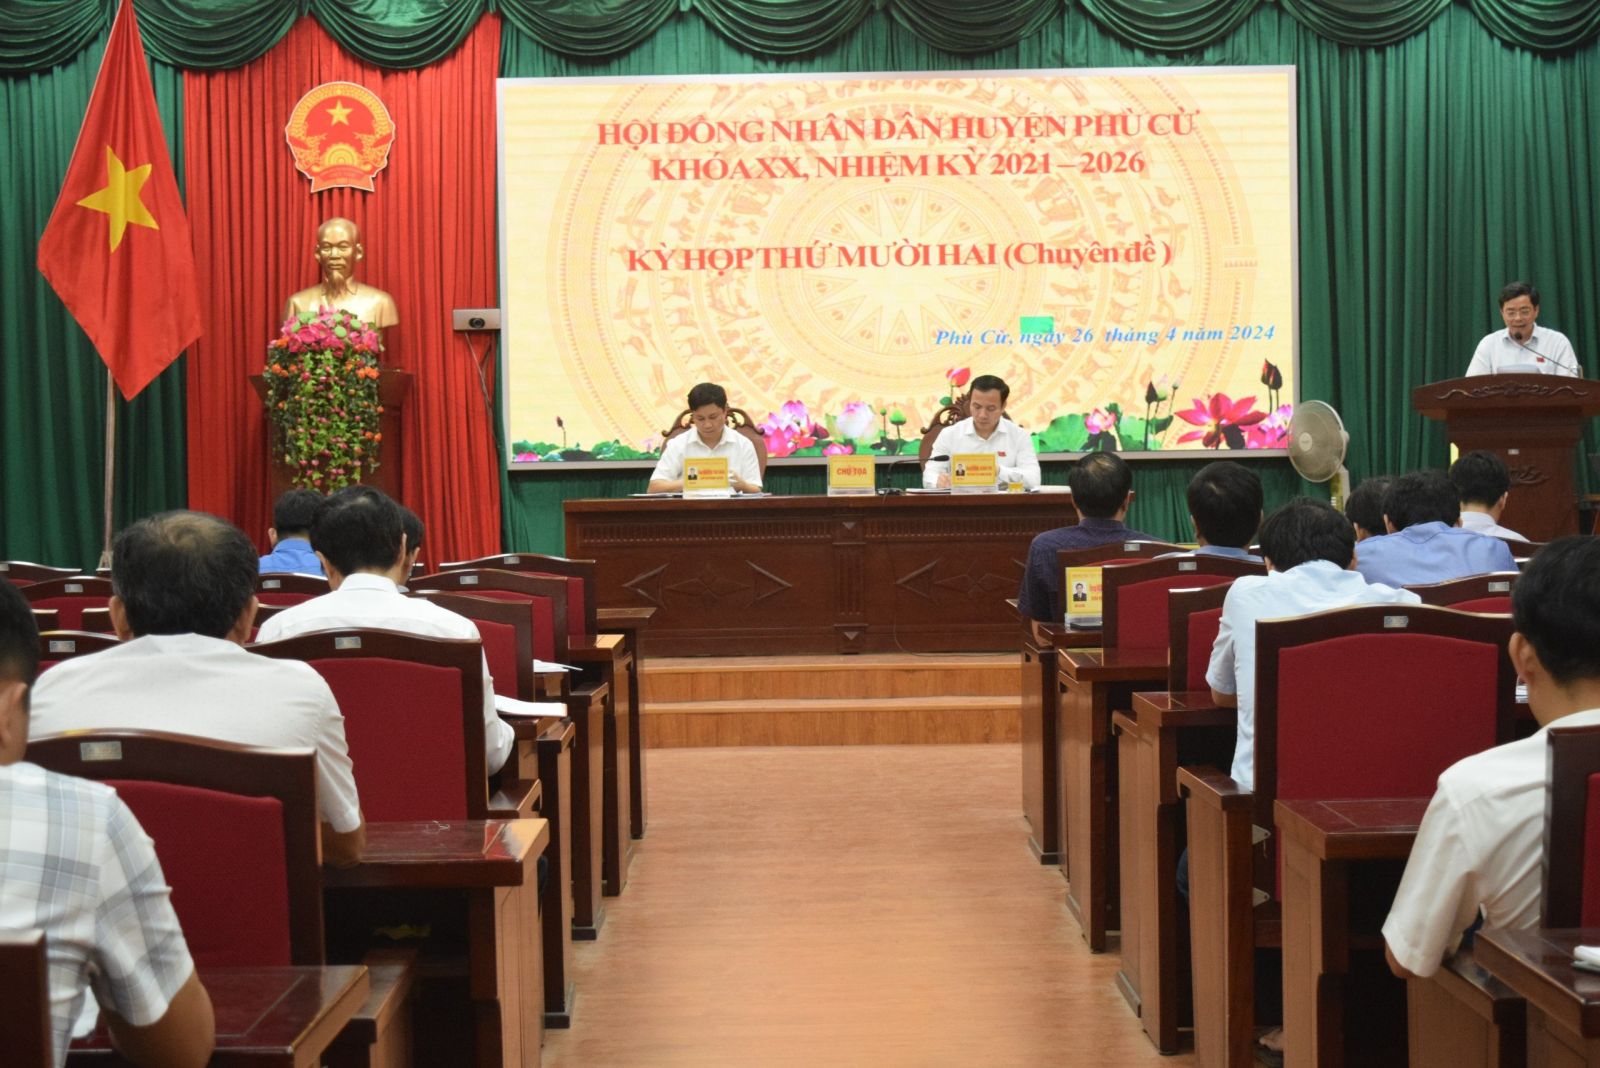 Hội đồng nhân dân huyện Phù Cừ tổ chức họp kỳ họp thứ Mười hai (Kỳ họp chuyên đề)